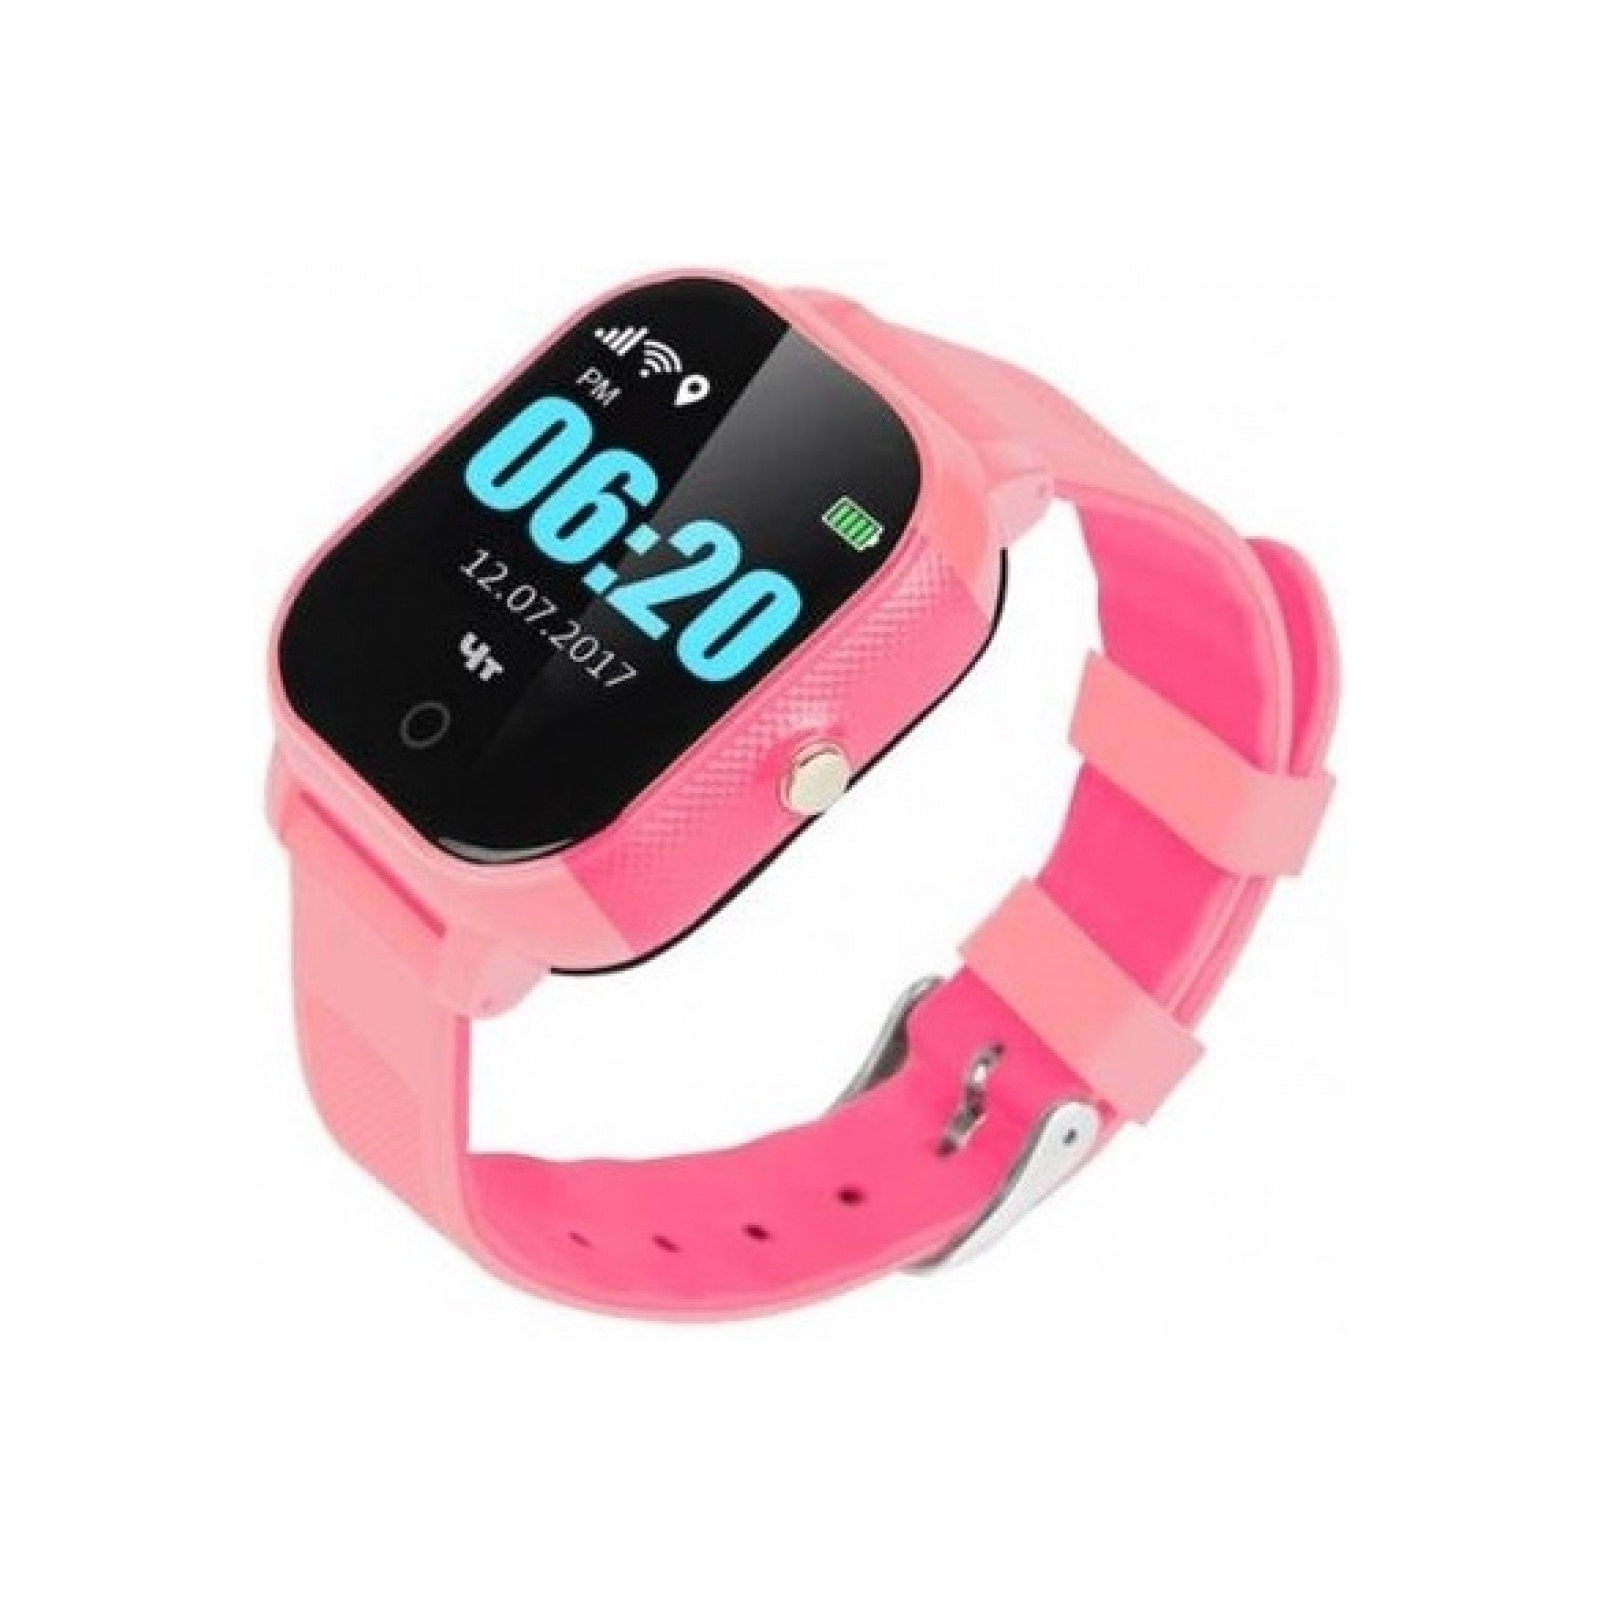 Смарт-годинник GoGPS К23 Pink Детские телефон-часы с GPS треккером (K23PK)